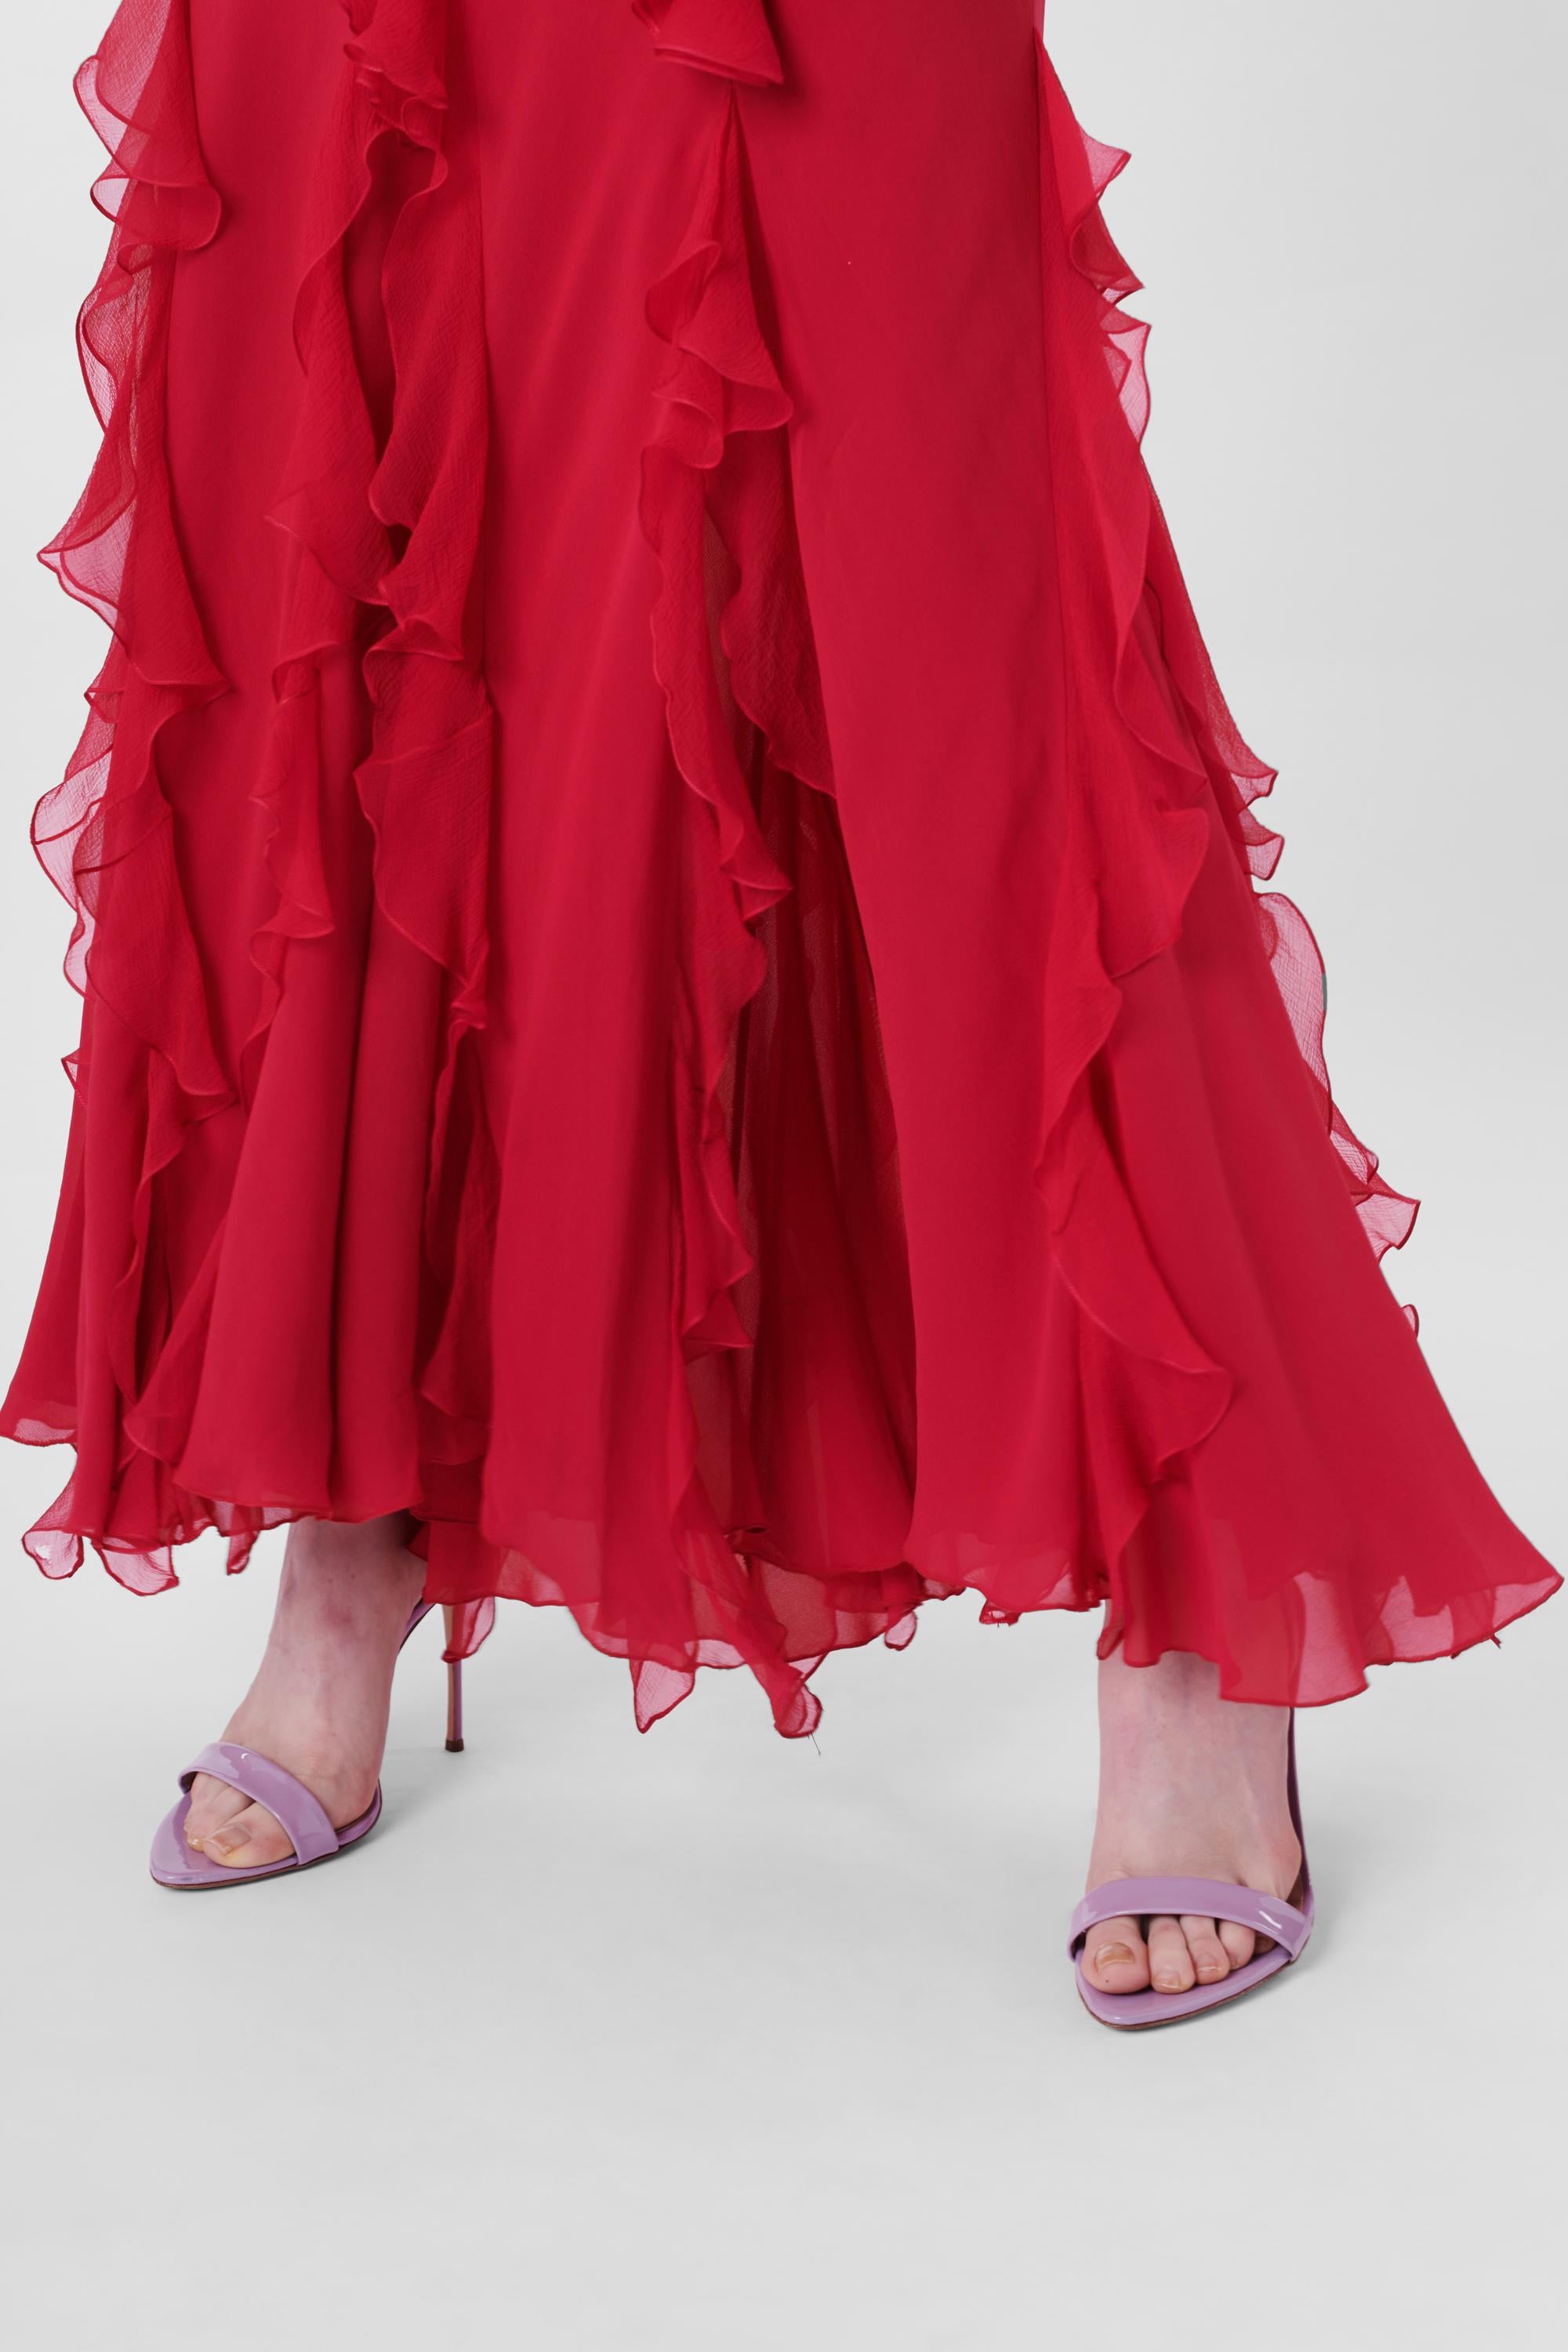 Women's John Galliano 2003 Pink Ruffled Maxi Dress For Sale